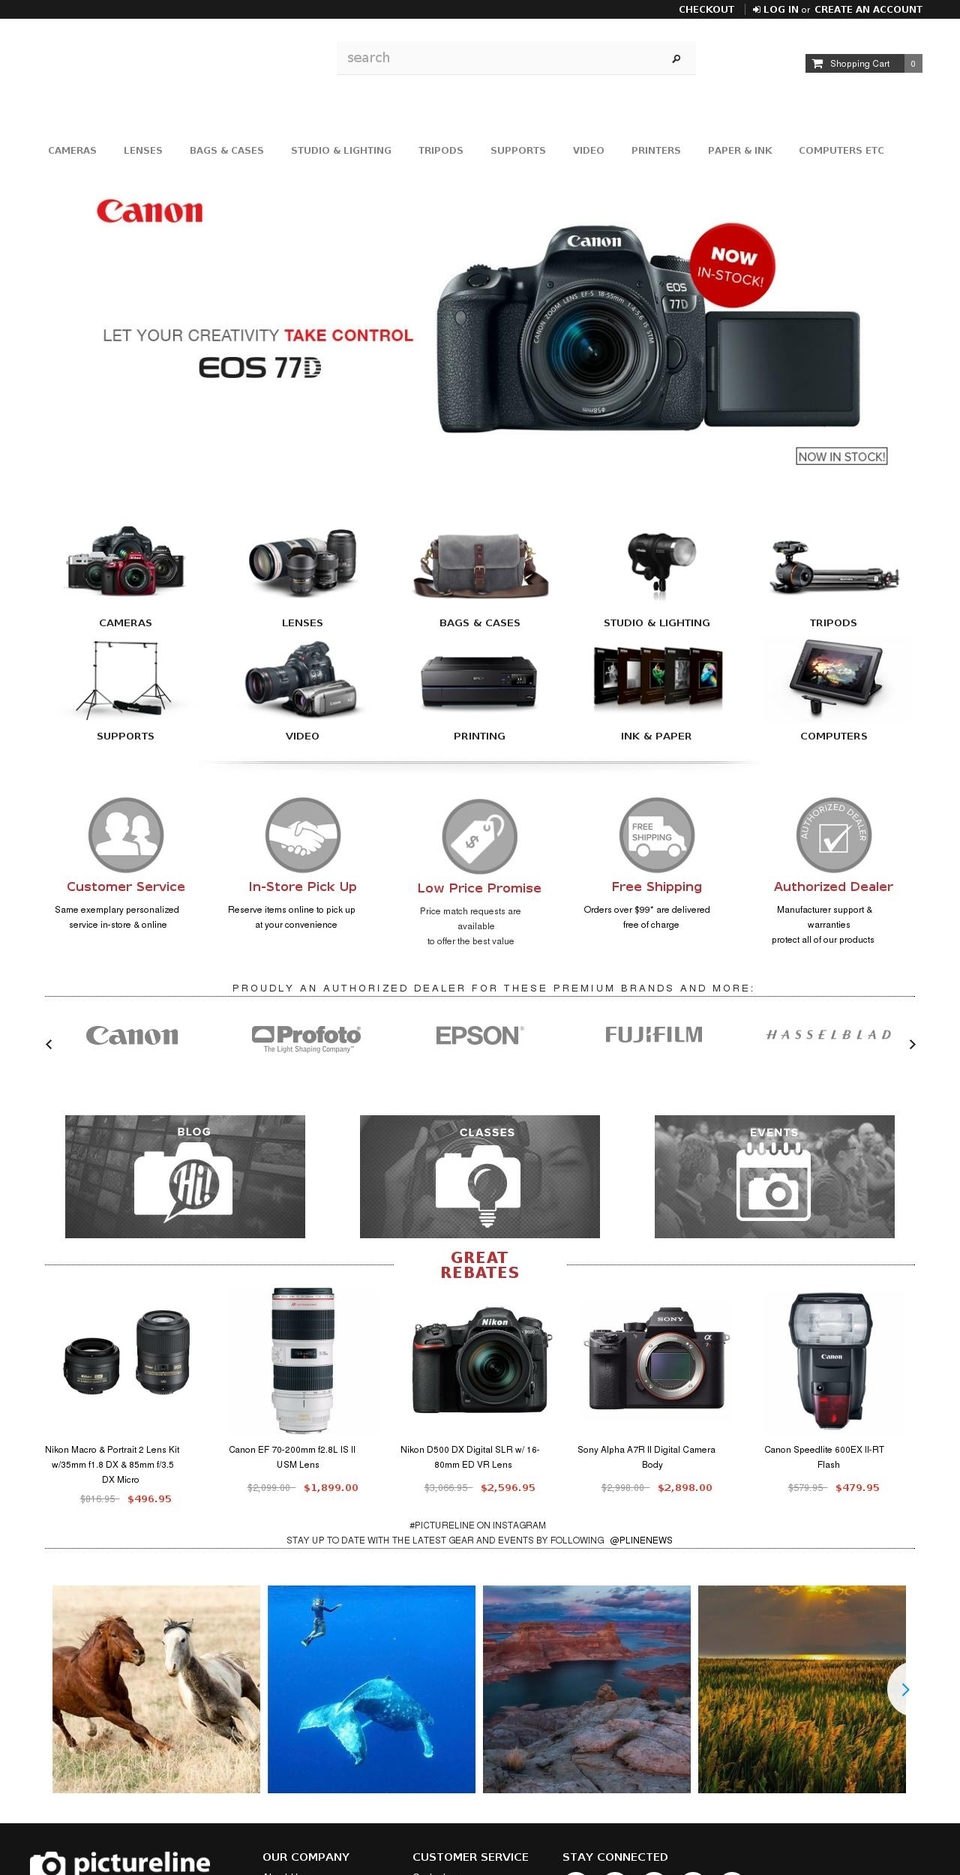 pictureline.com shopify website screenshot